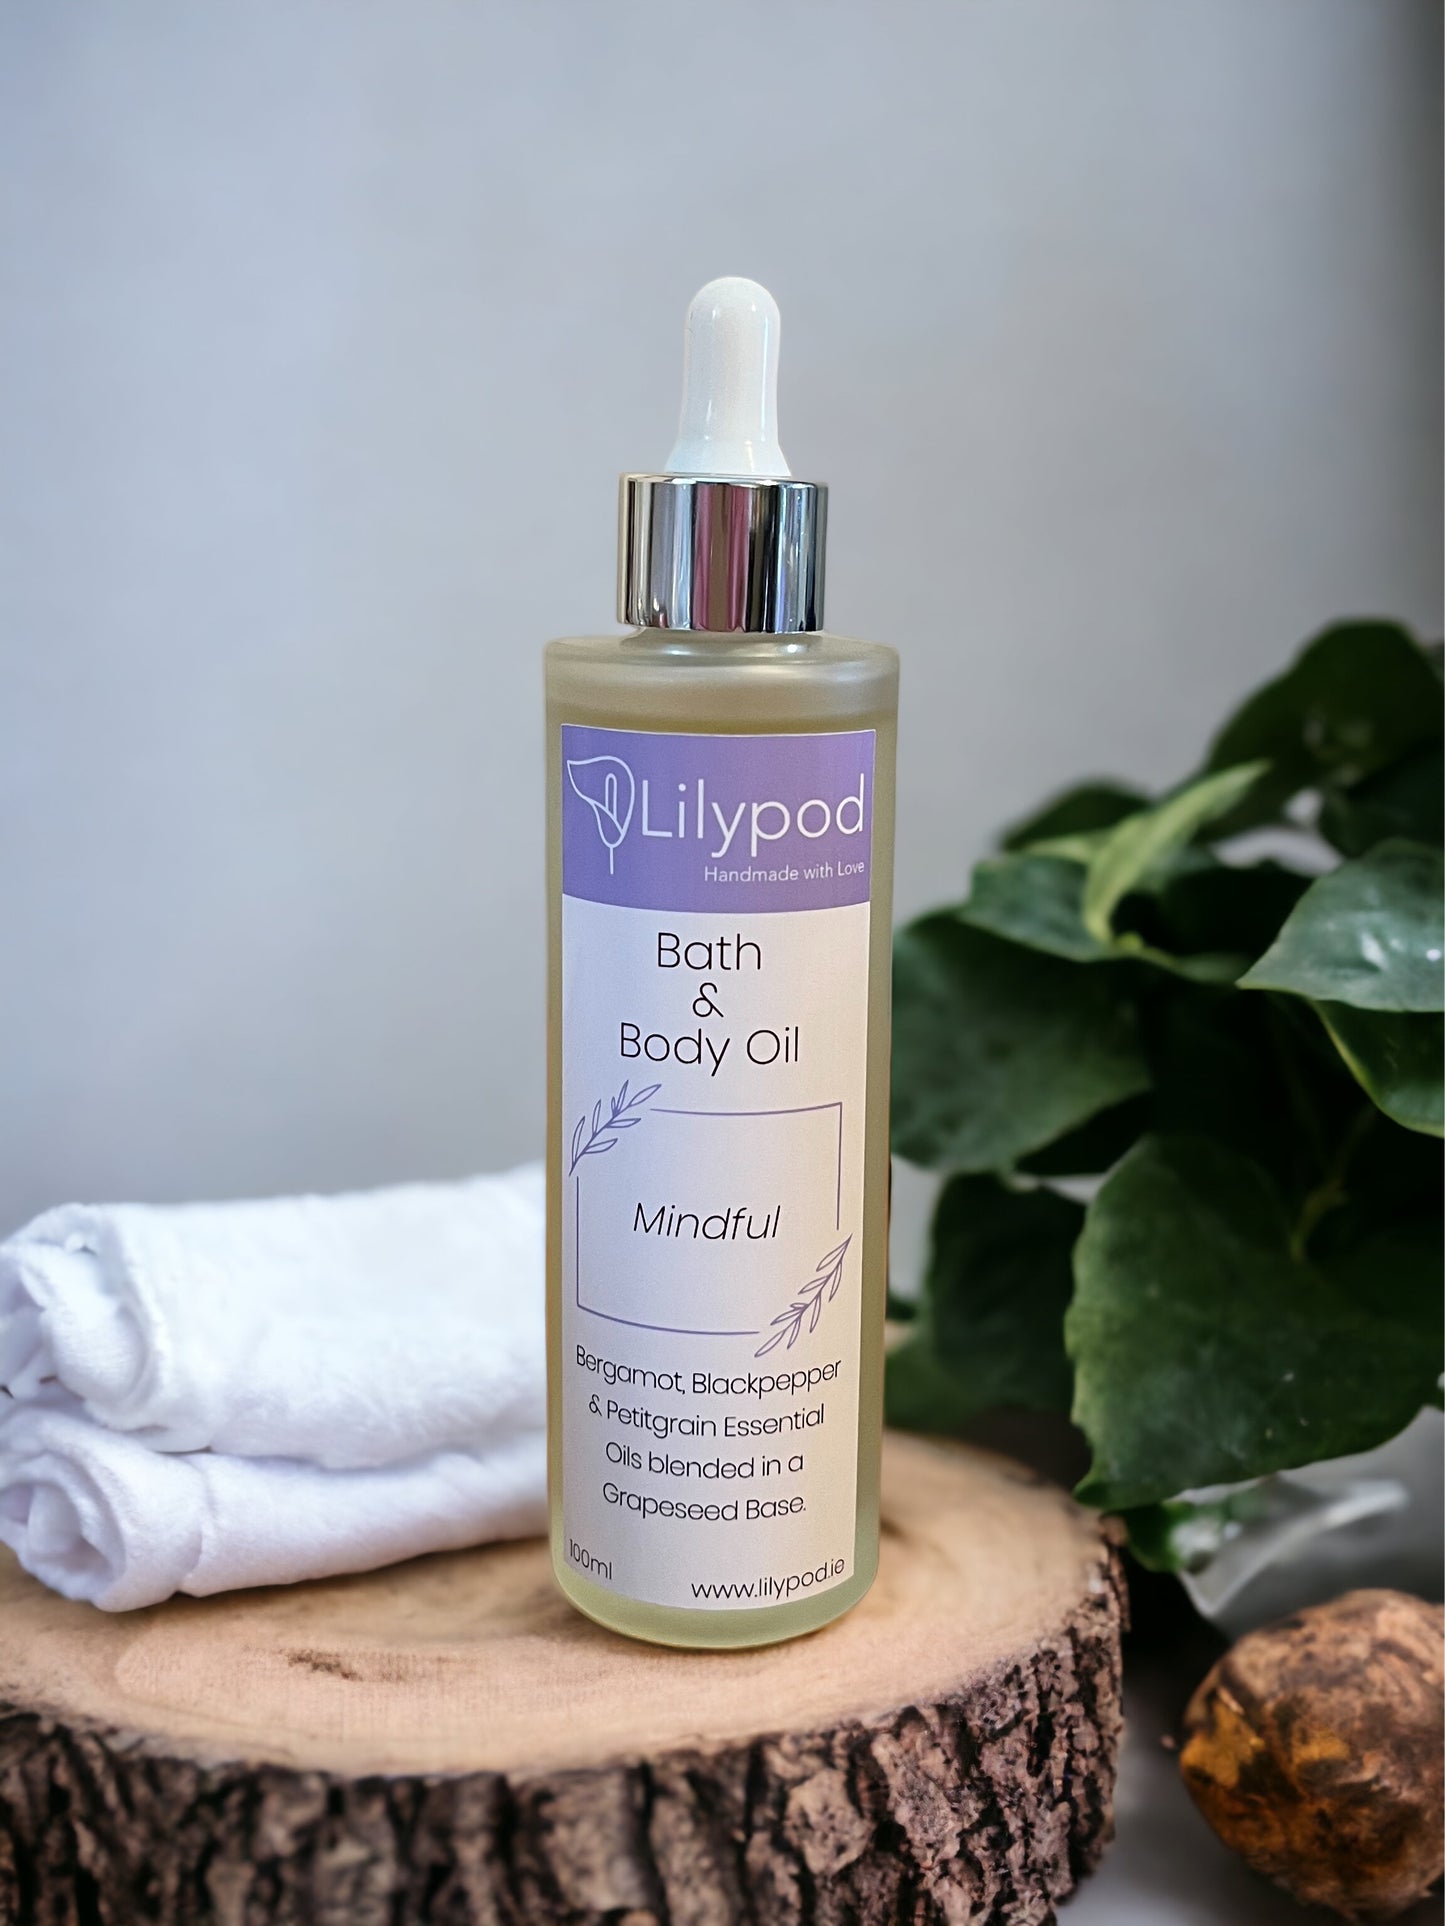 Mindful Bath & Body Oil